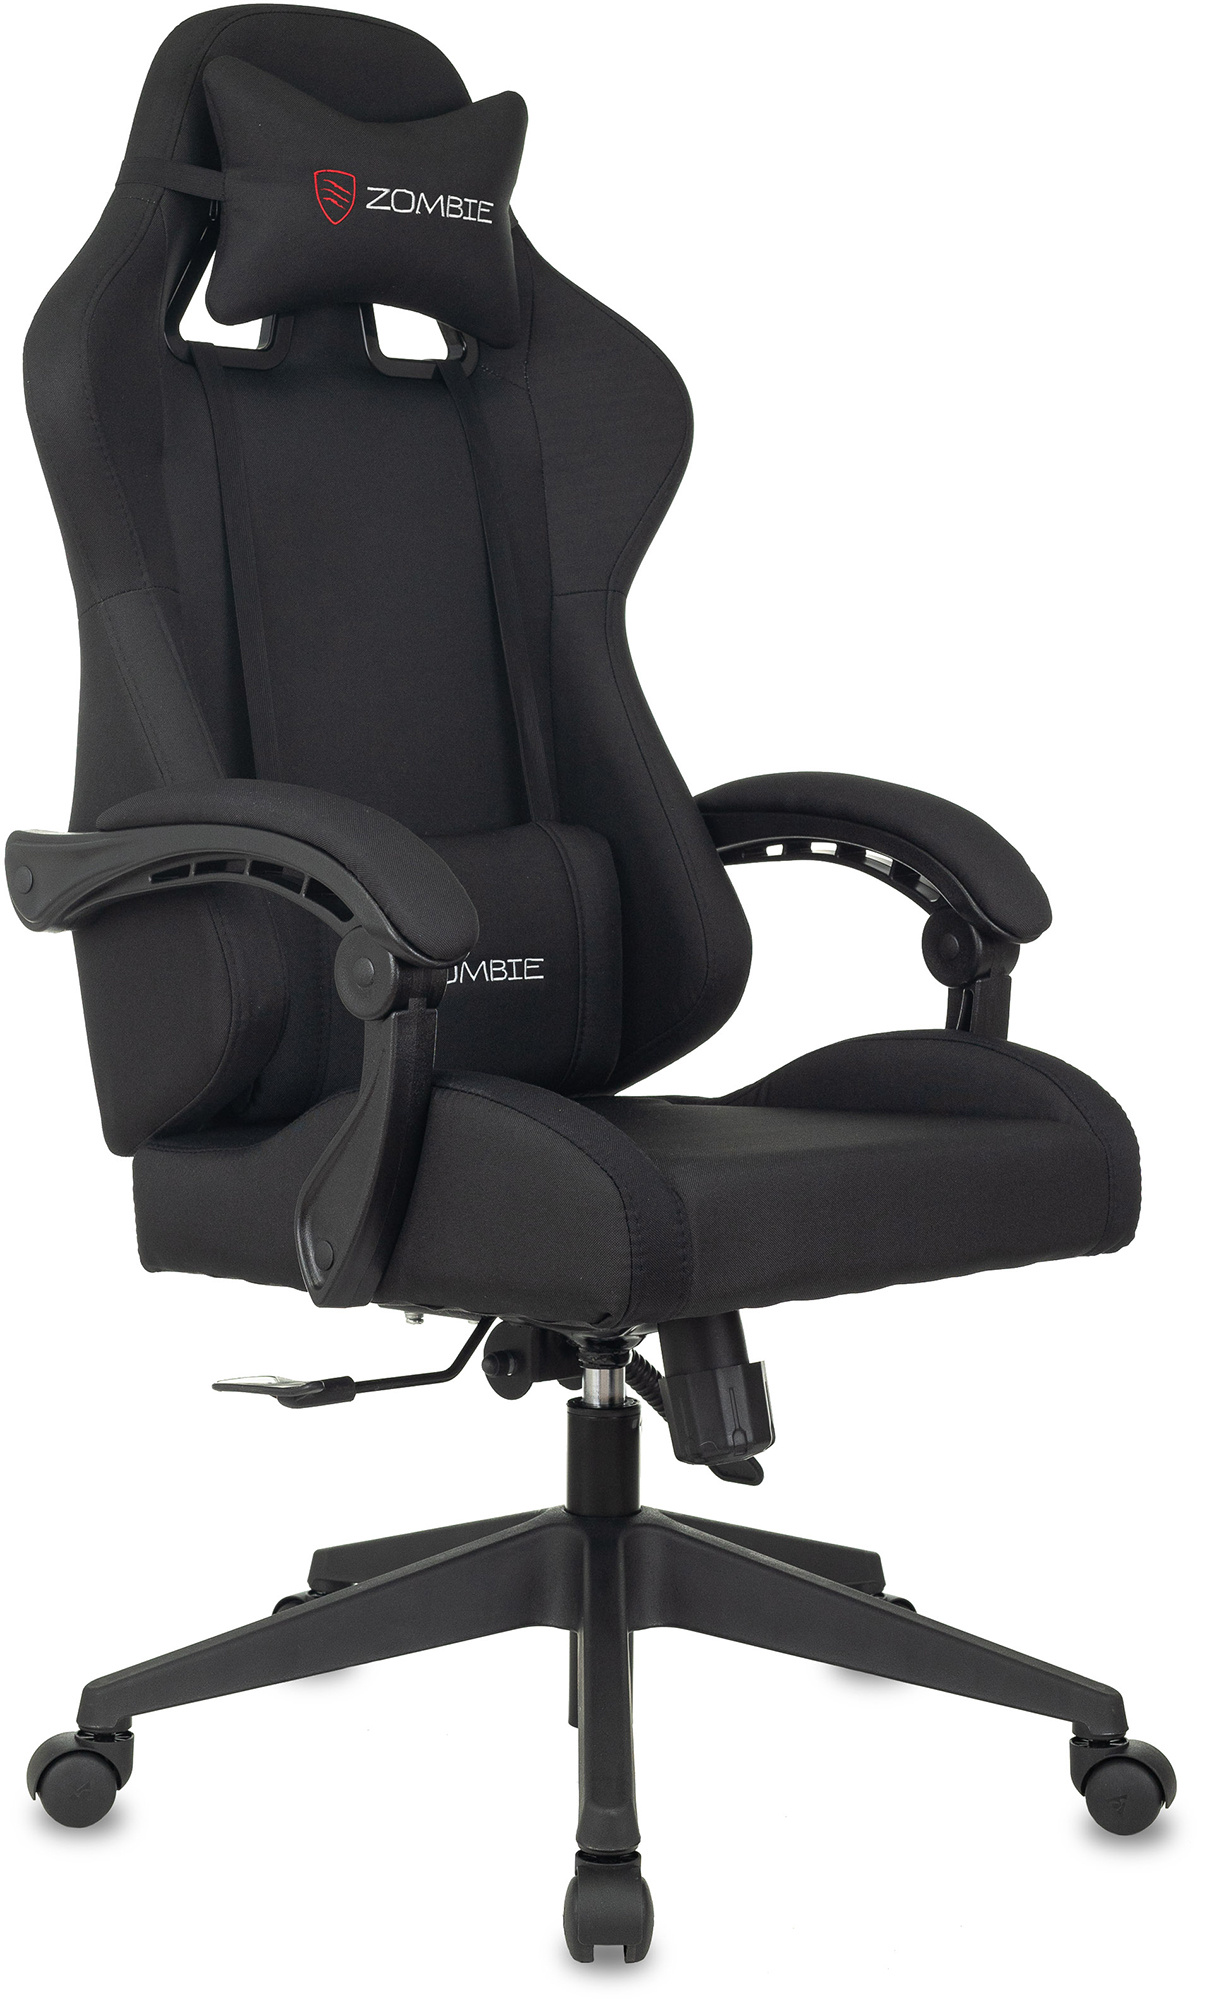 Кресло игровое Zombie Predator черный Neo Black крестов. пластик - купить в ИП Климентова Юлия Алексеевна, цена на Мегамаркет